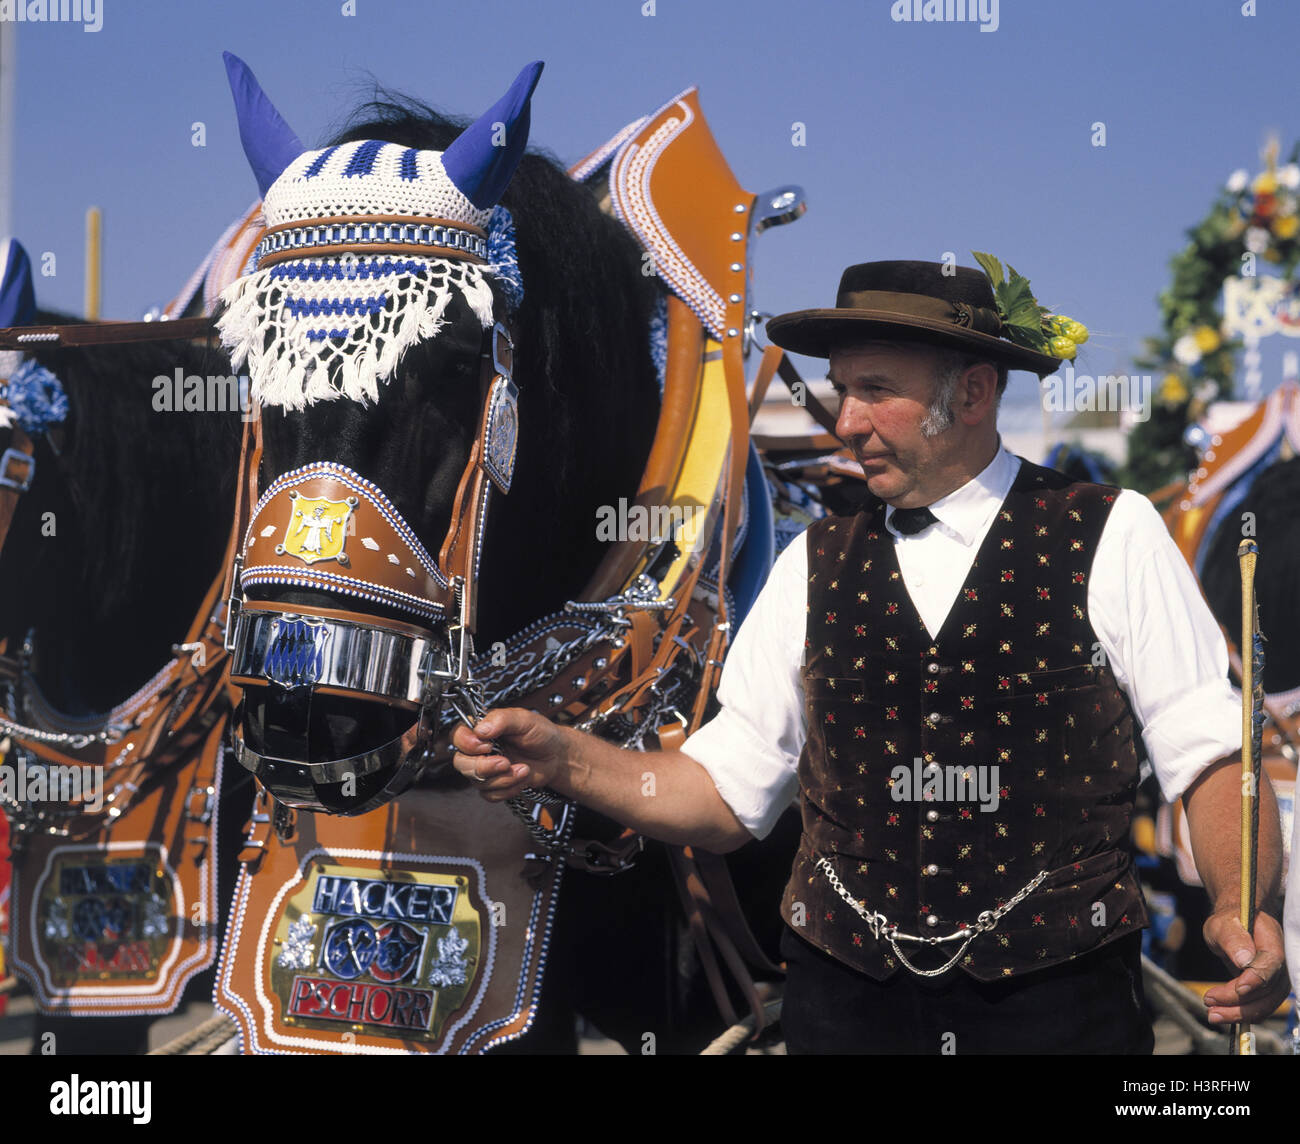 Germania - Monaco, Oktoberfest, processione del Cavallo, guida al di fuori, Baviera, uomo, costume nazionale, tradizione, tradizionalmente, a cavallo e in carrozza a cavallo, gioielli, decorata, carrozze, festa, festa pubblica, equo, Foto Stock